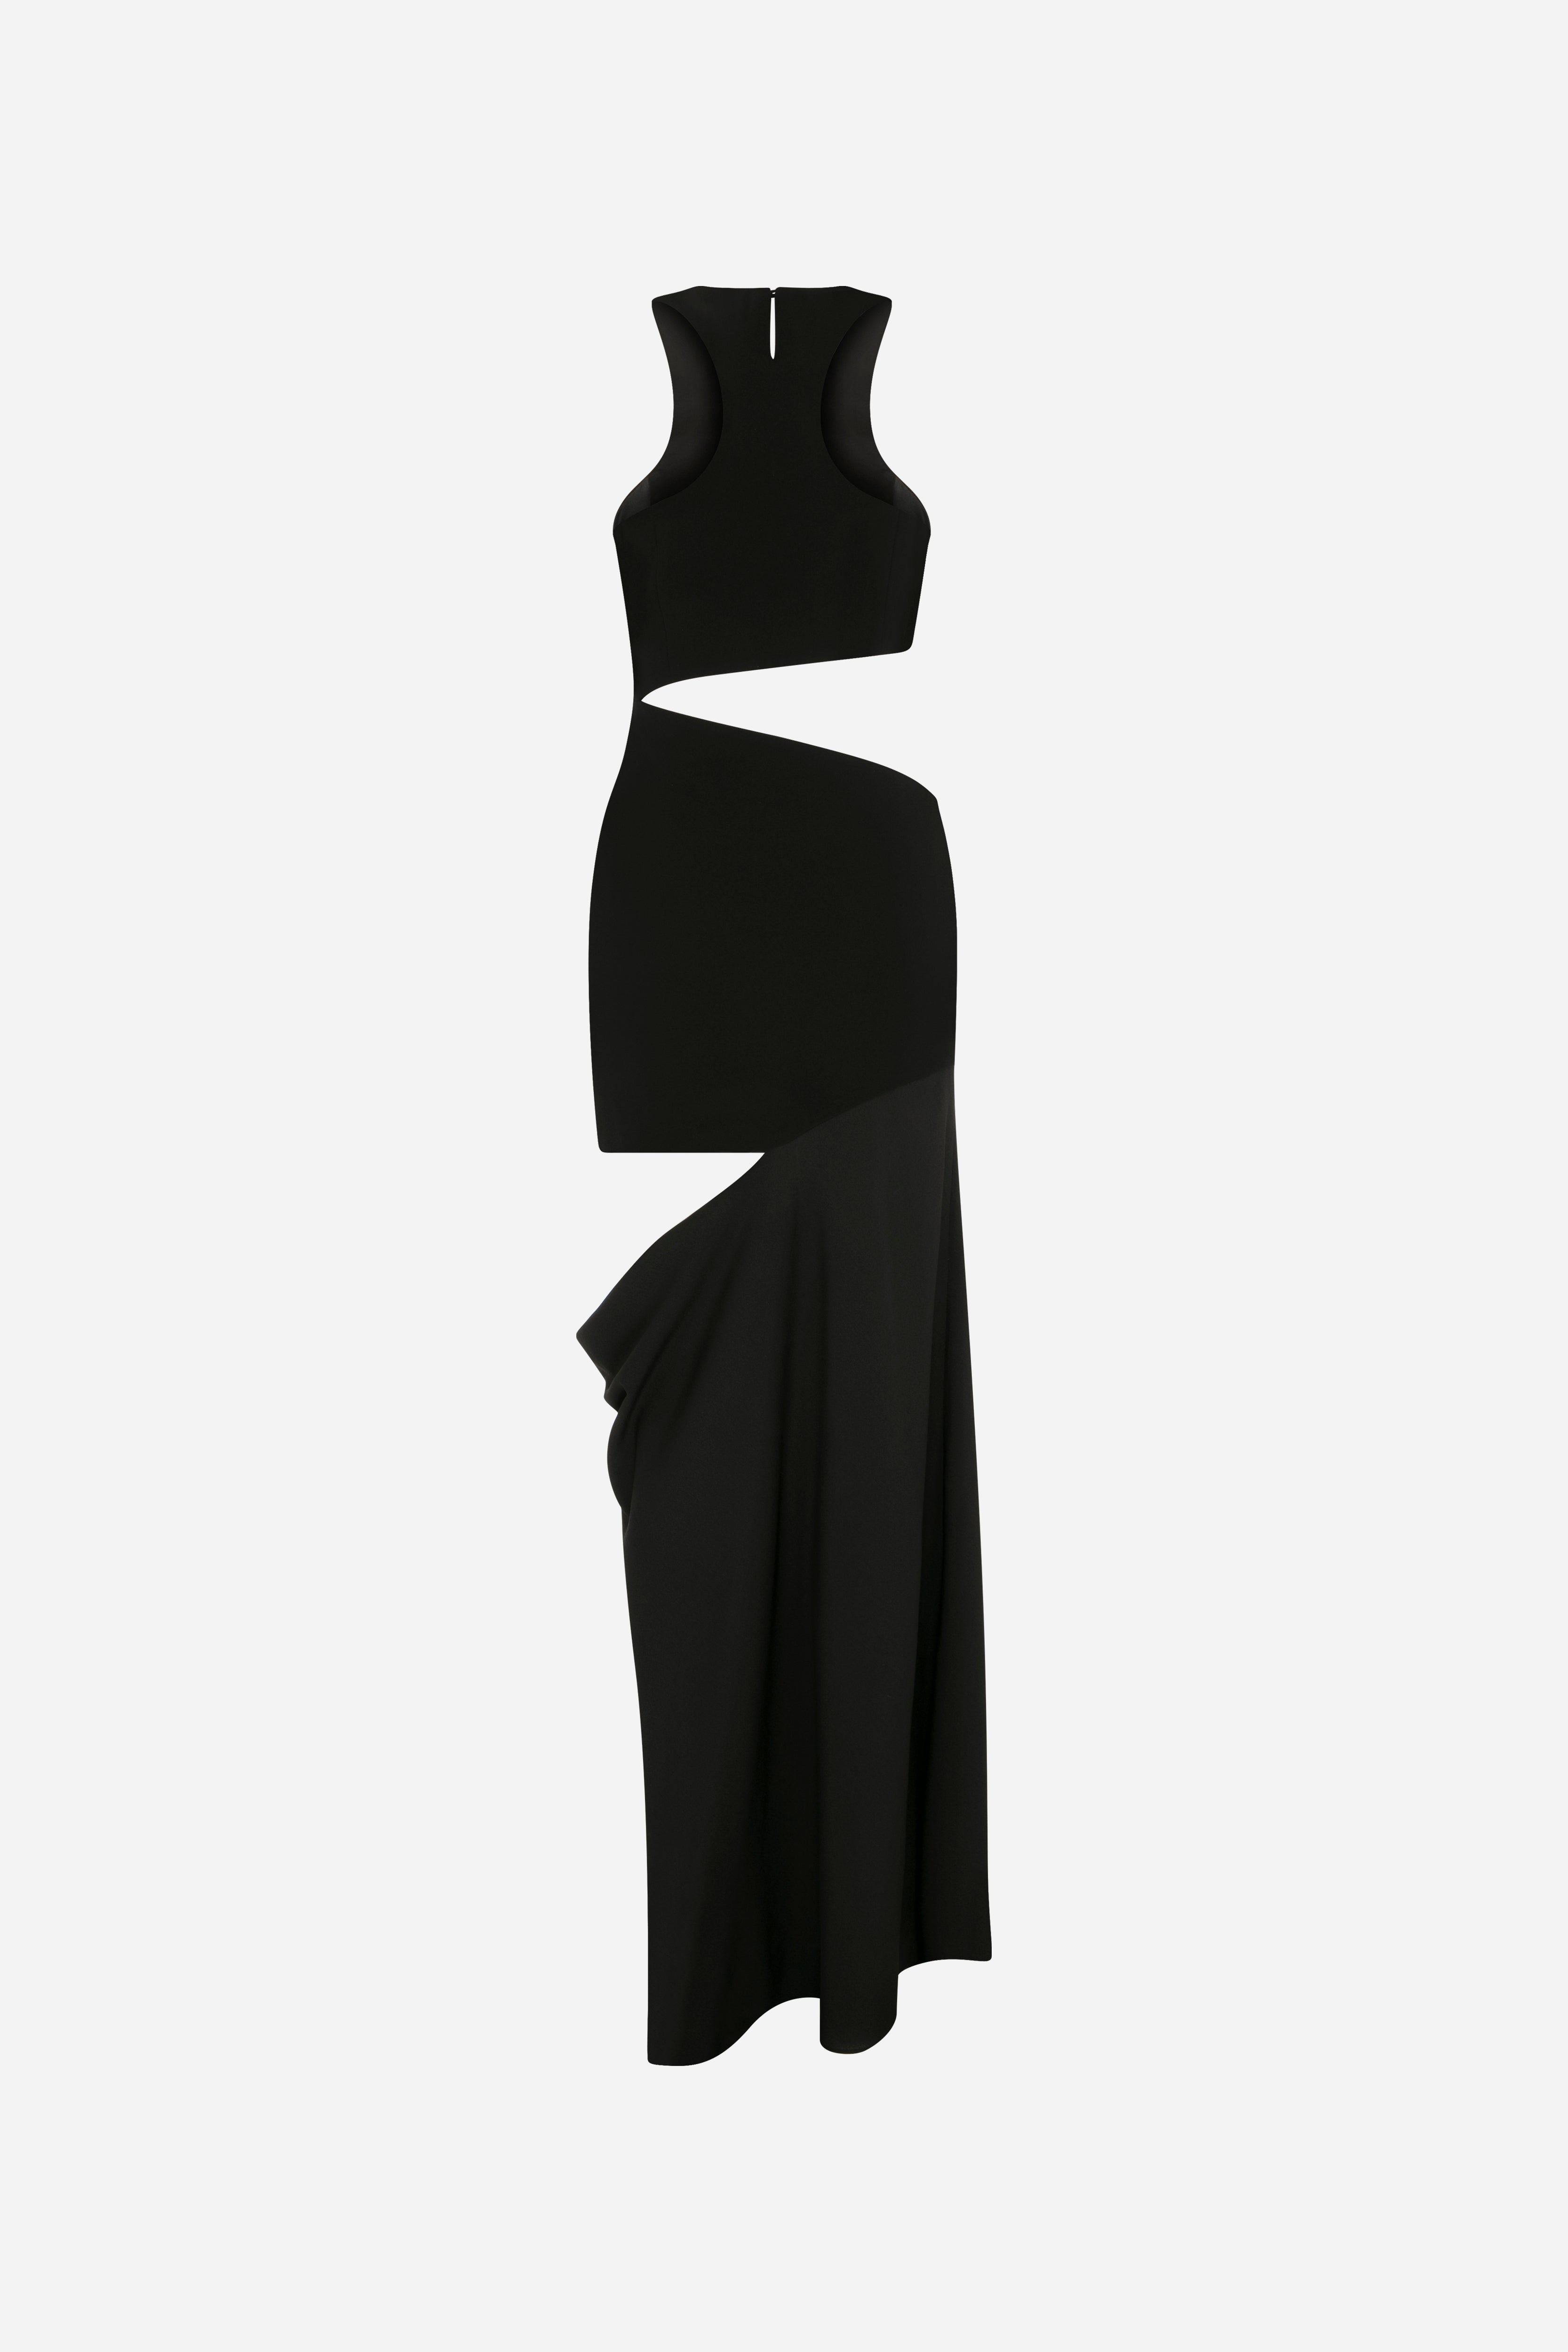 Zoya - Semi Sheer Dress With Cutout Details